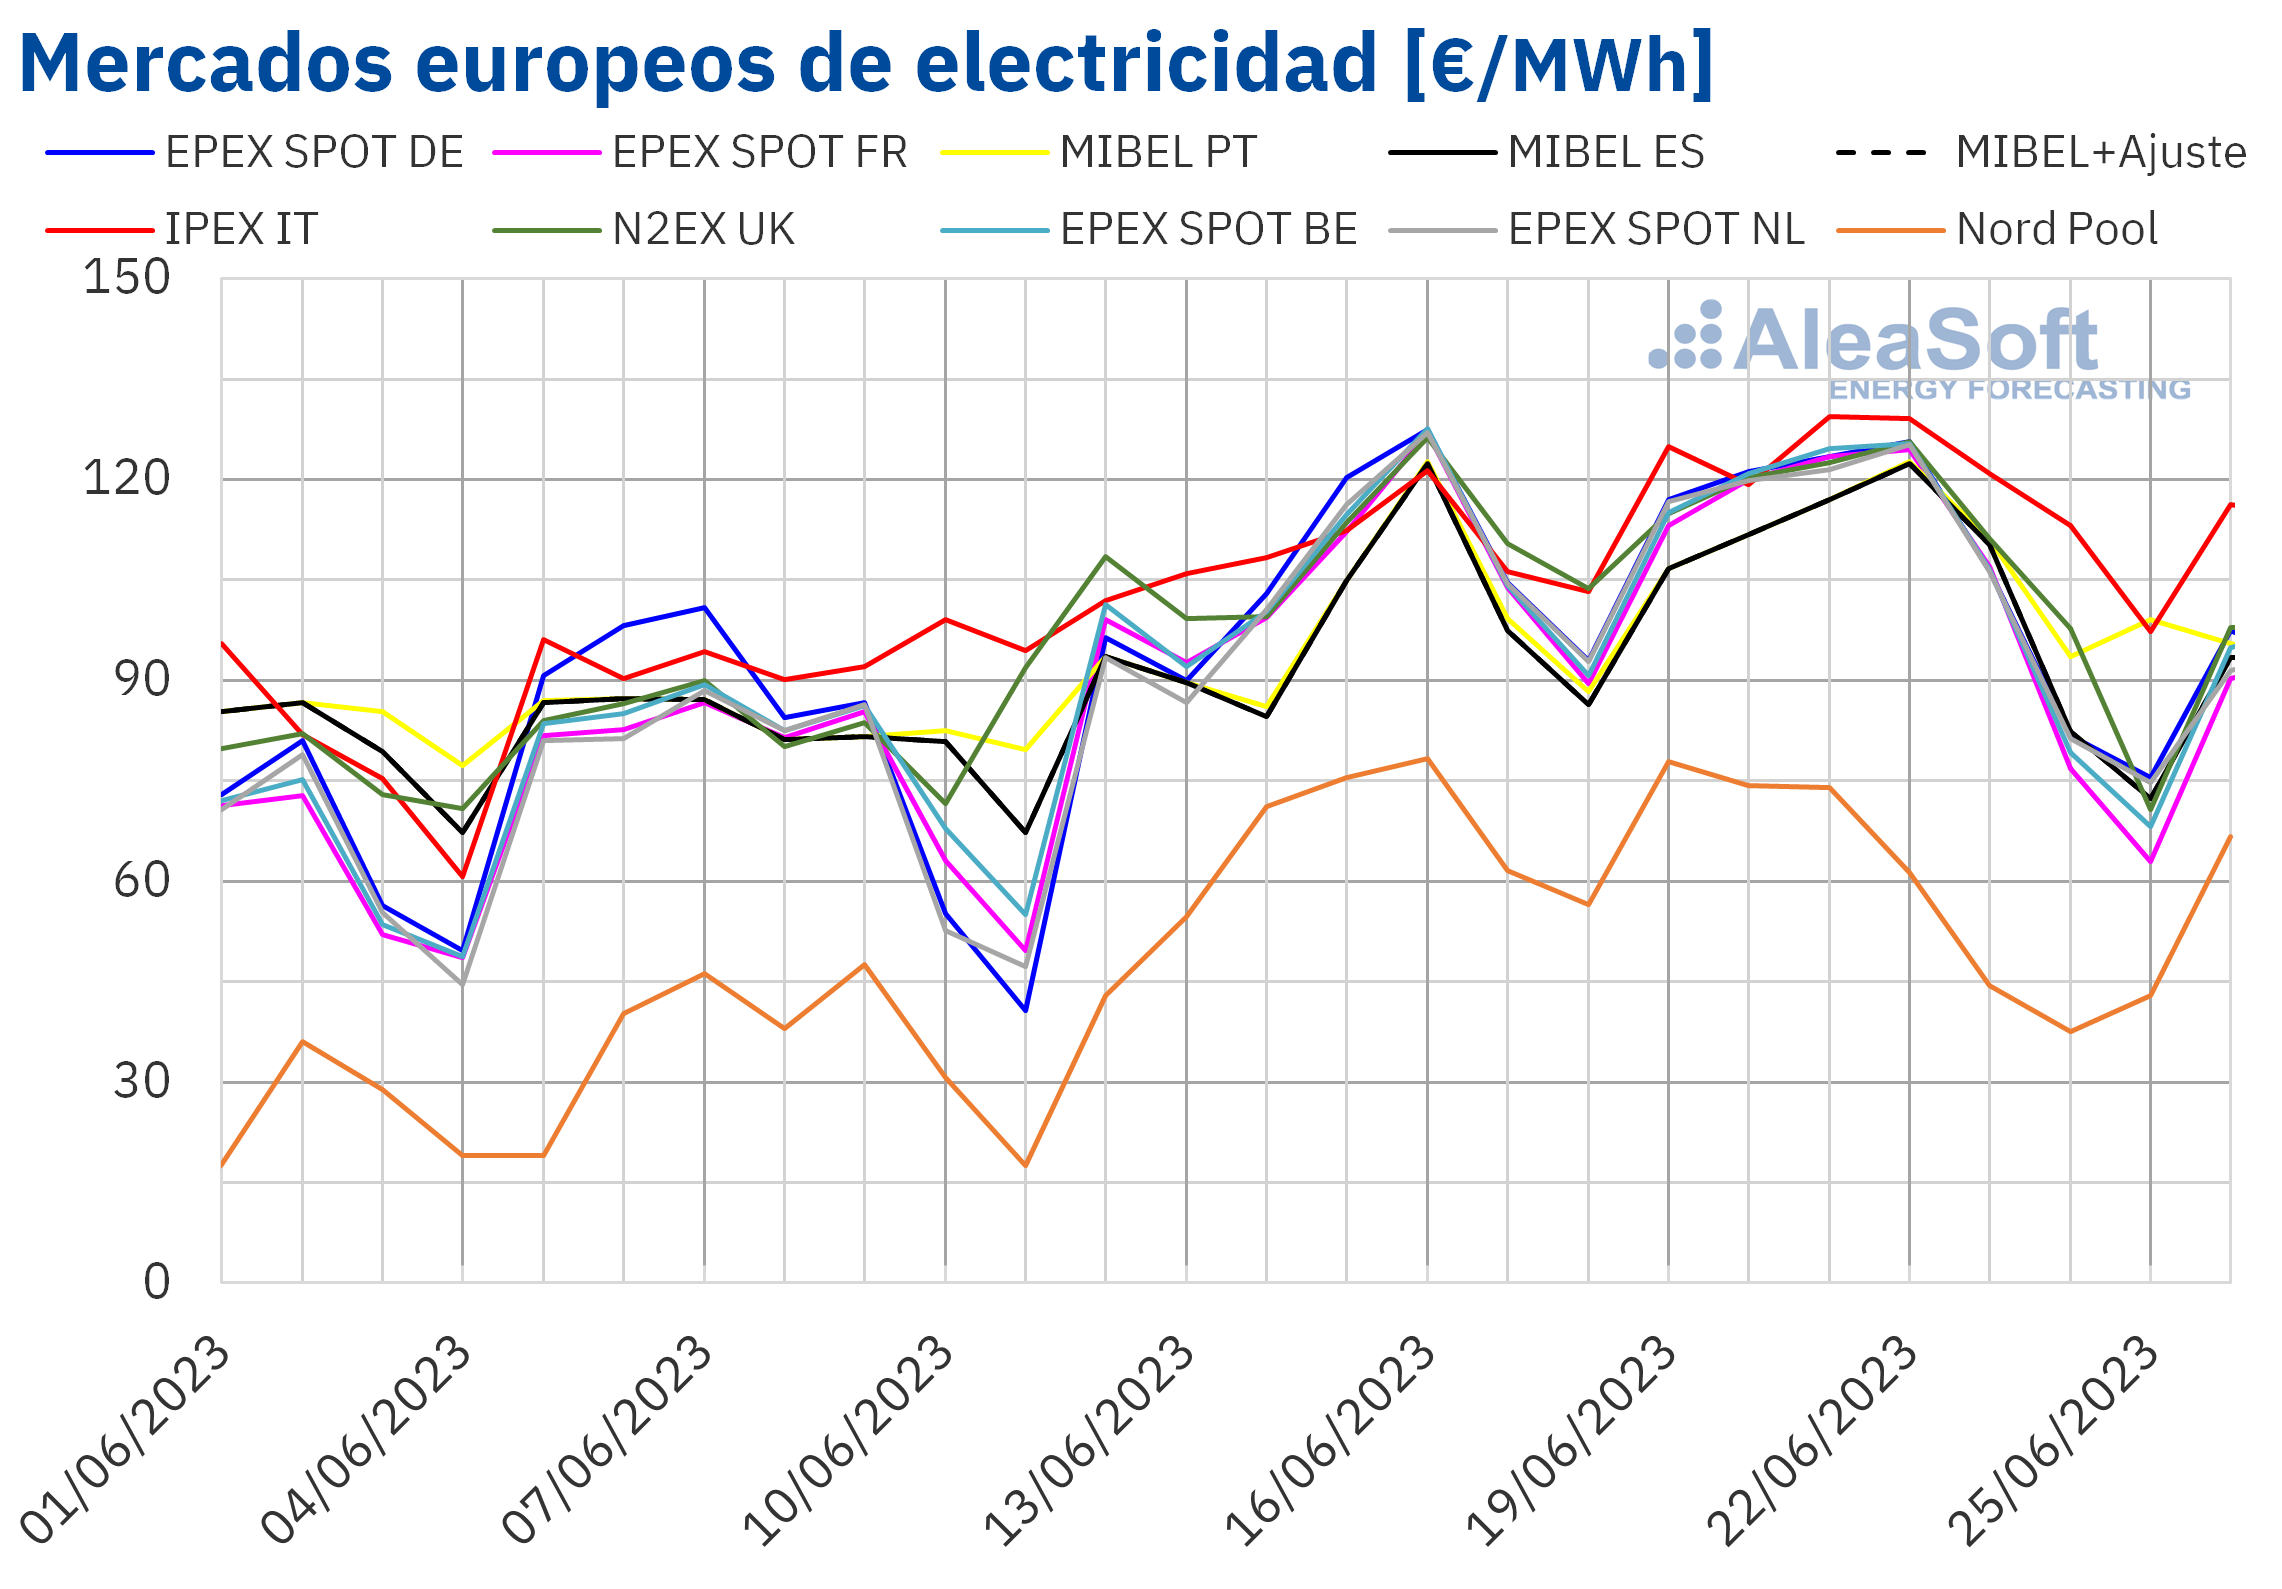 AleaSoft: mercados europeos, precios alcistas por subidas de gas y CO2 y descensos al final de la semana